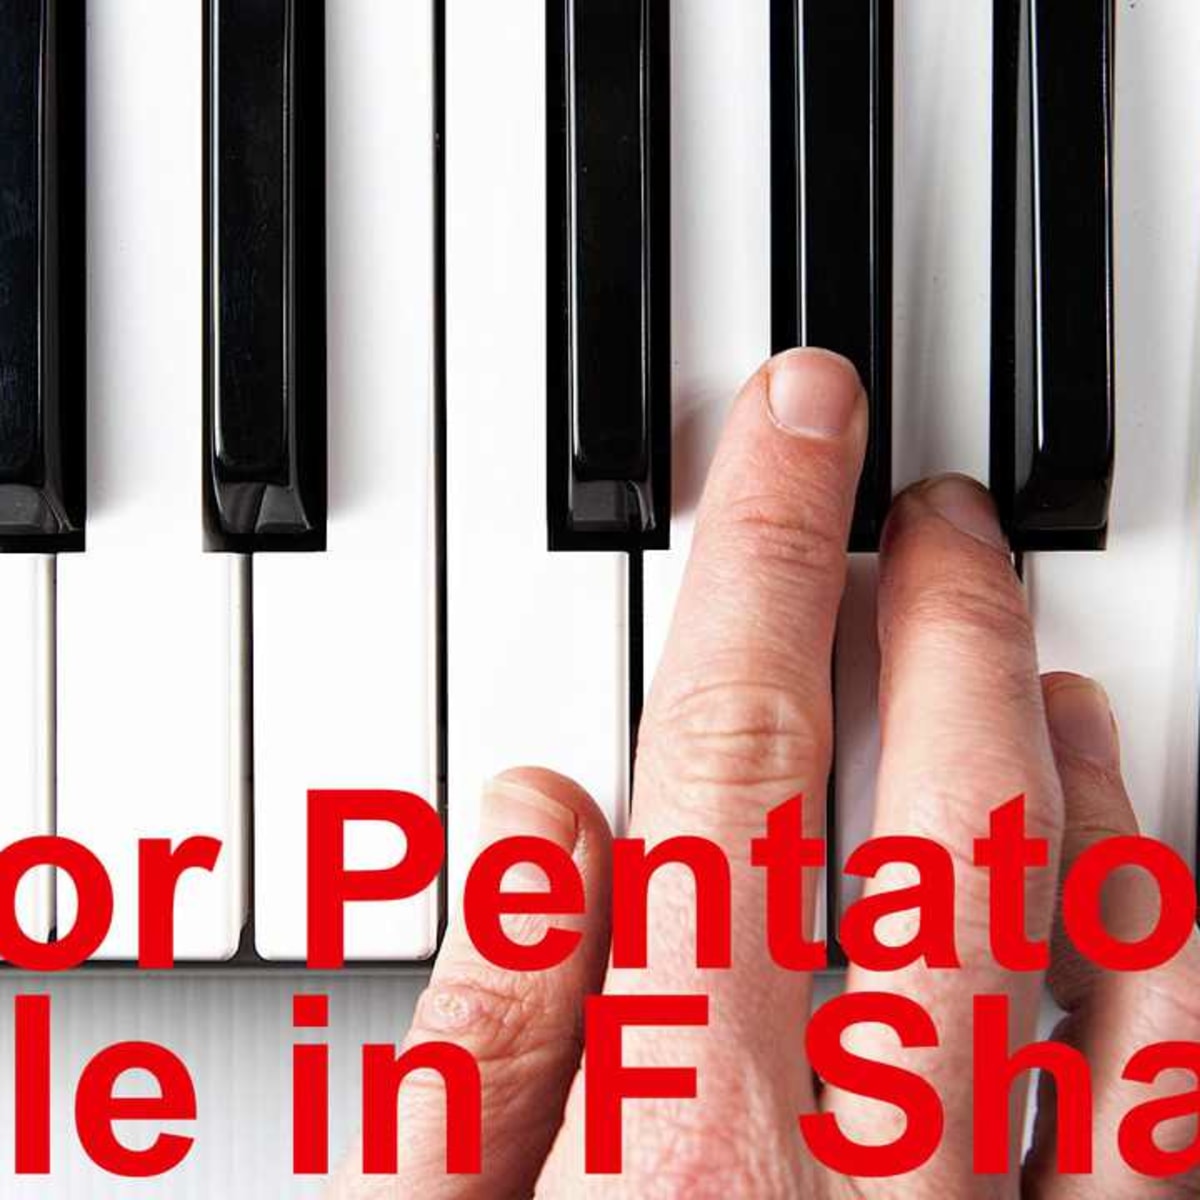 f sharp major scale piano